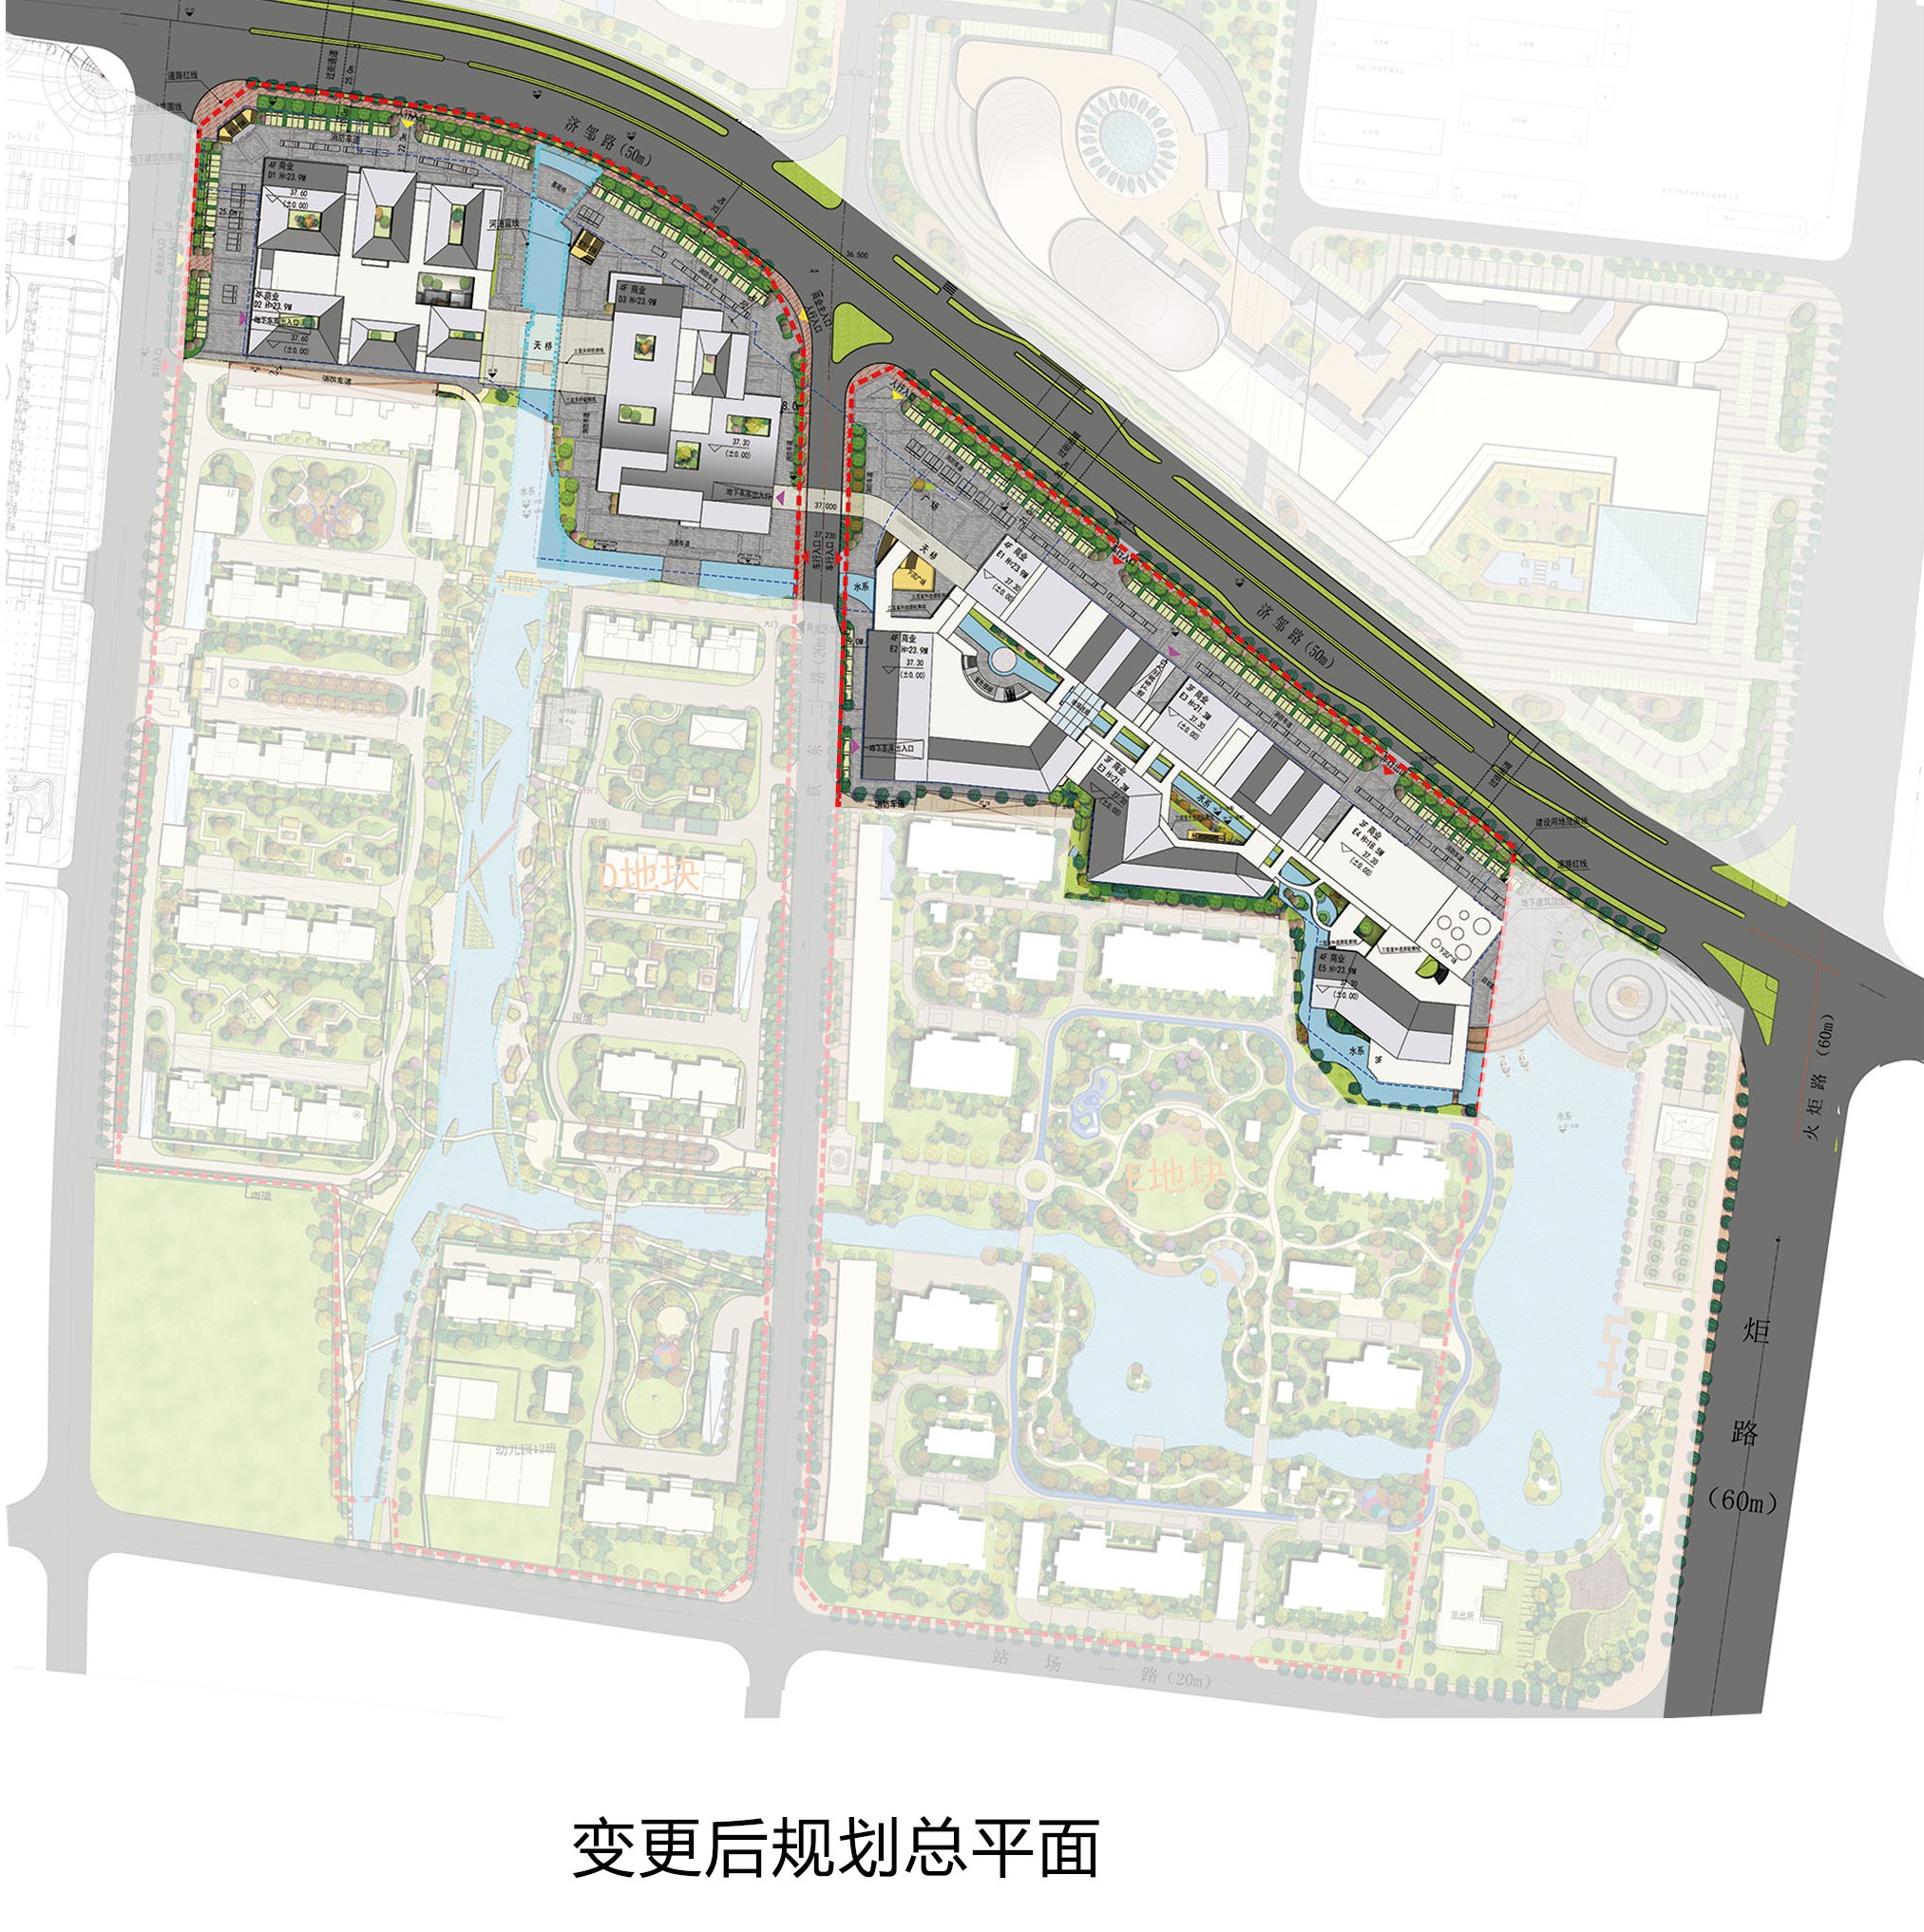 规划平面对比图工程概况1,建设单位:华城(de地块)津多里商业街2,建设